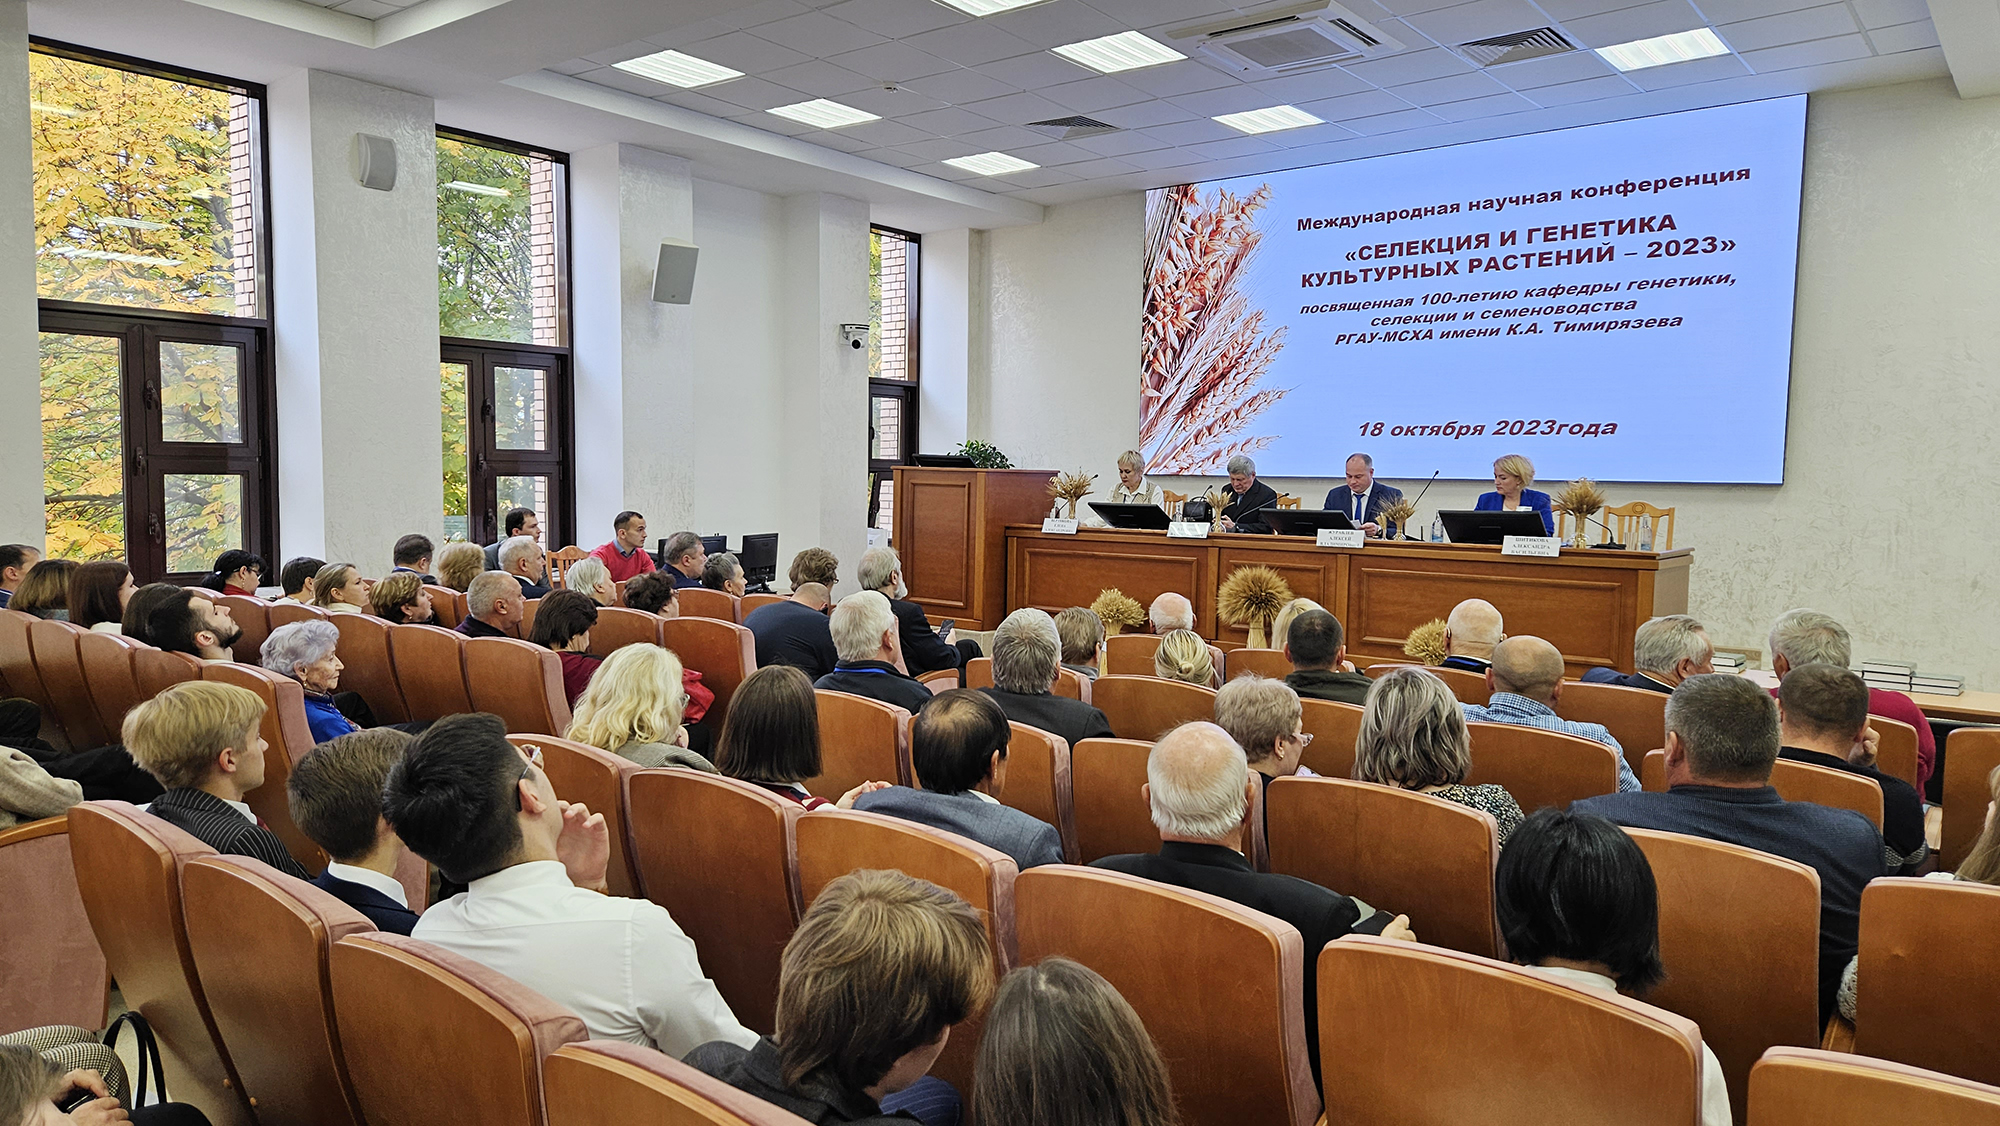  В Тимирязевской академии отметили 100-летие кафедры генетики, селекции и семеноводства